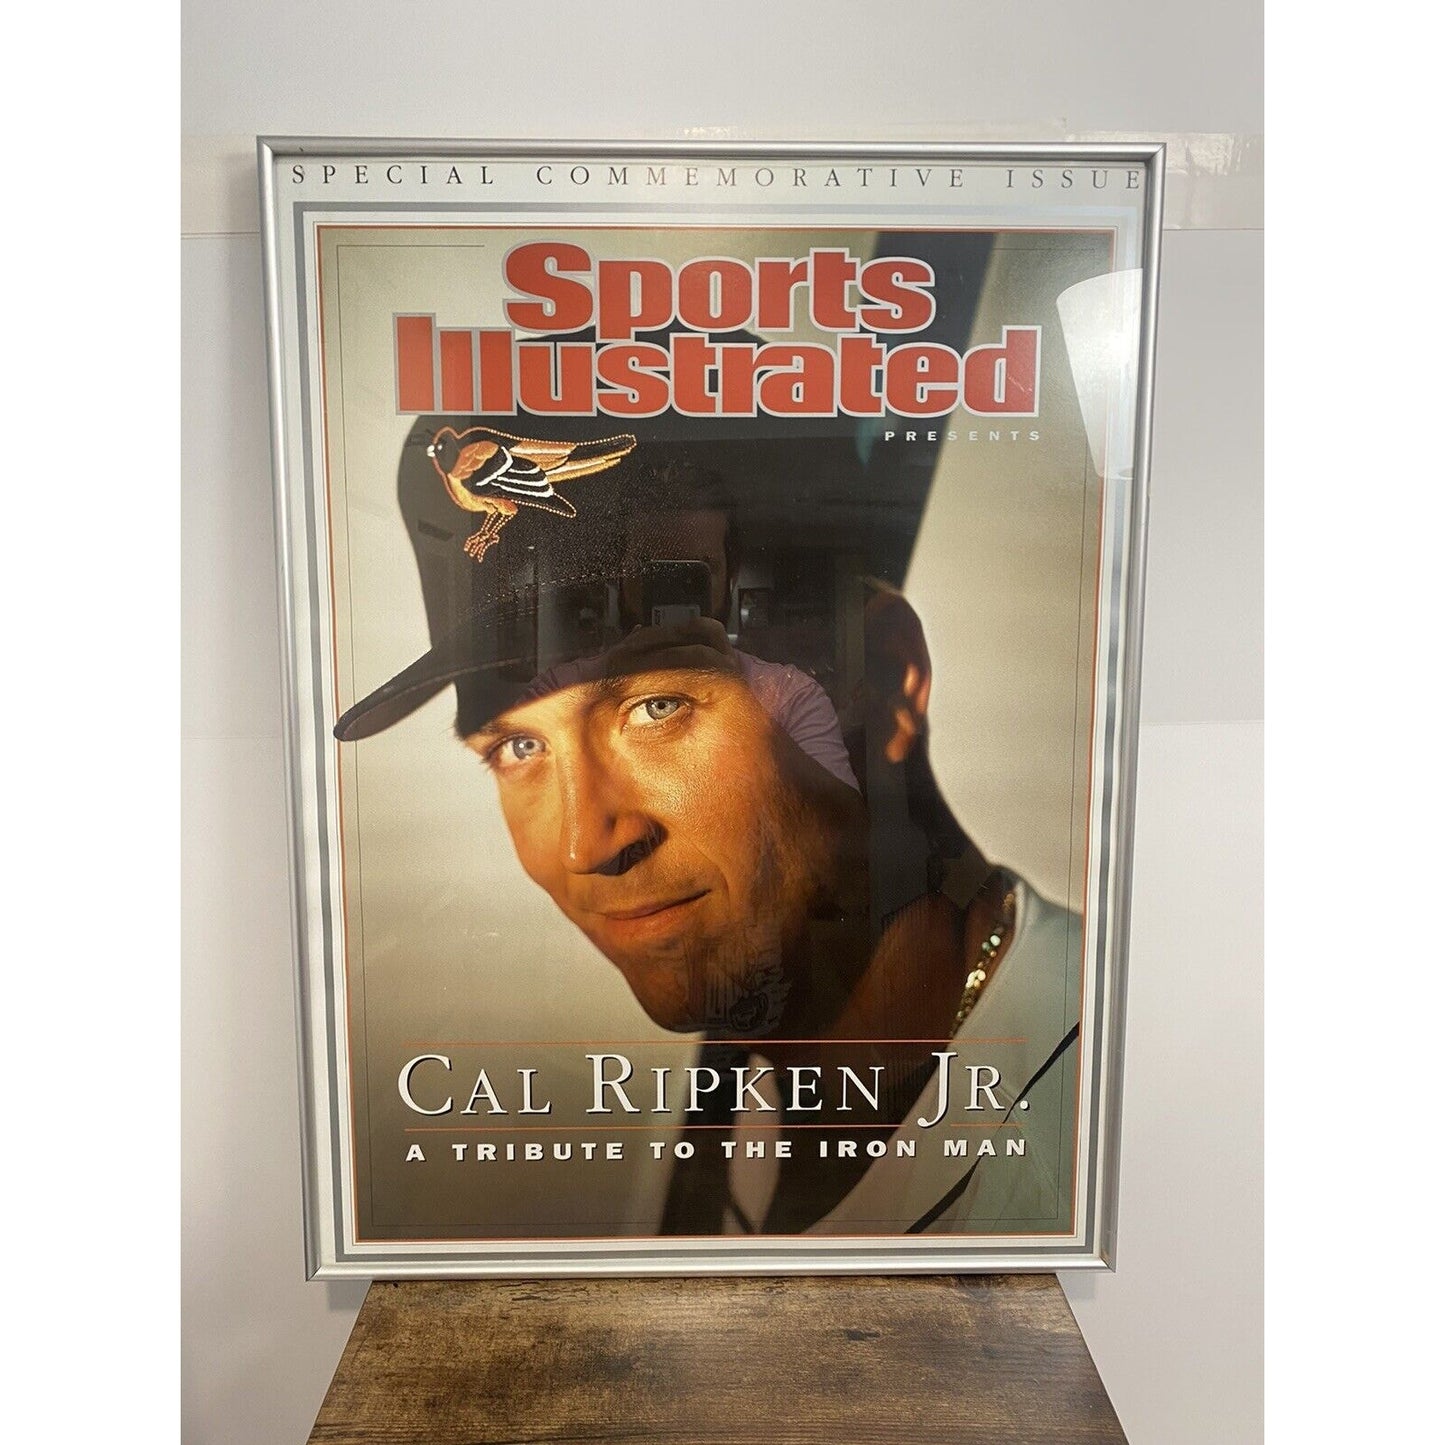 Framed Cal Ripken Jr. Sports Illustrated Commemorative Issue Cover 25x18.5